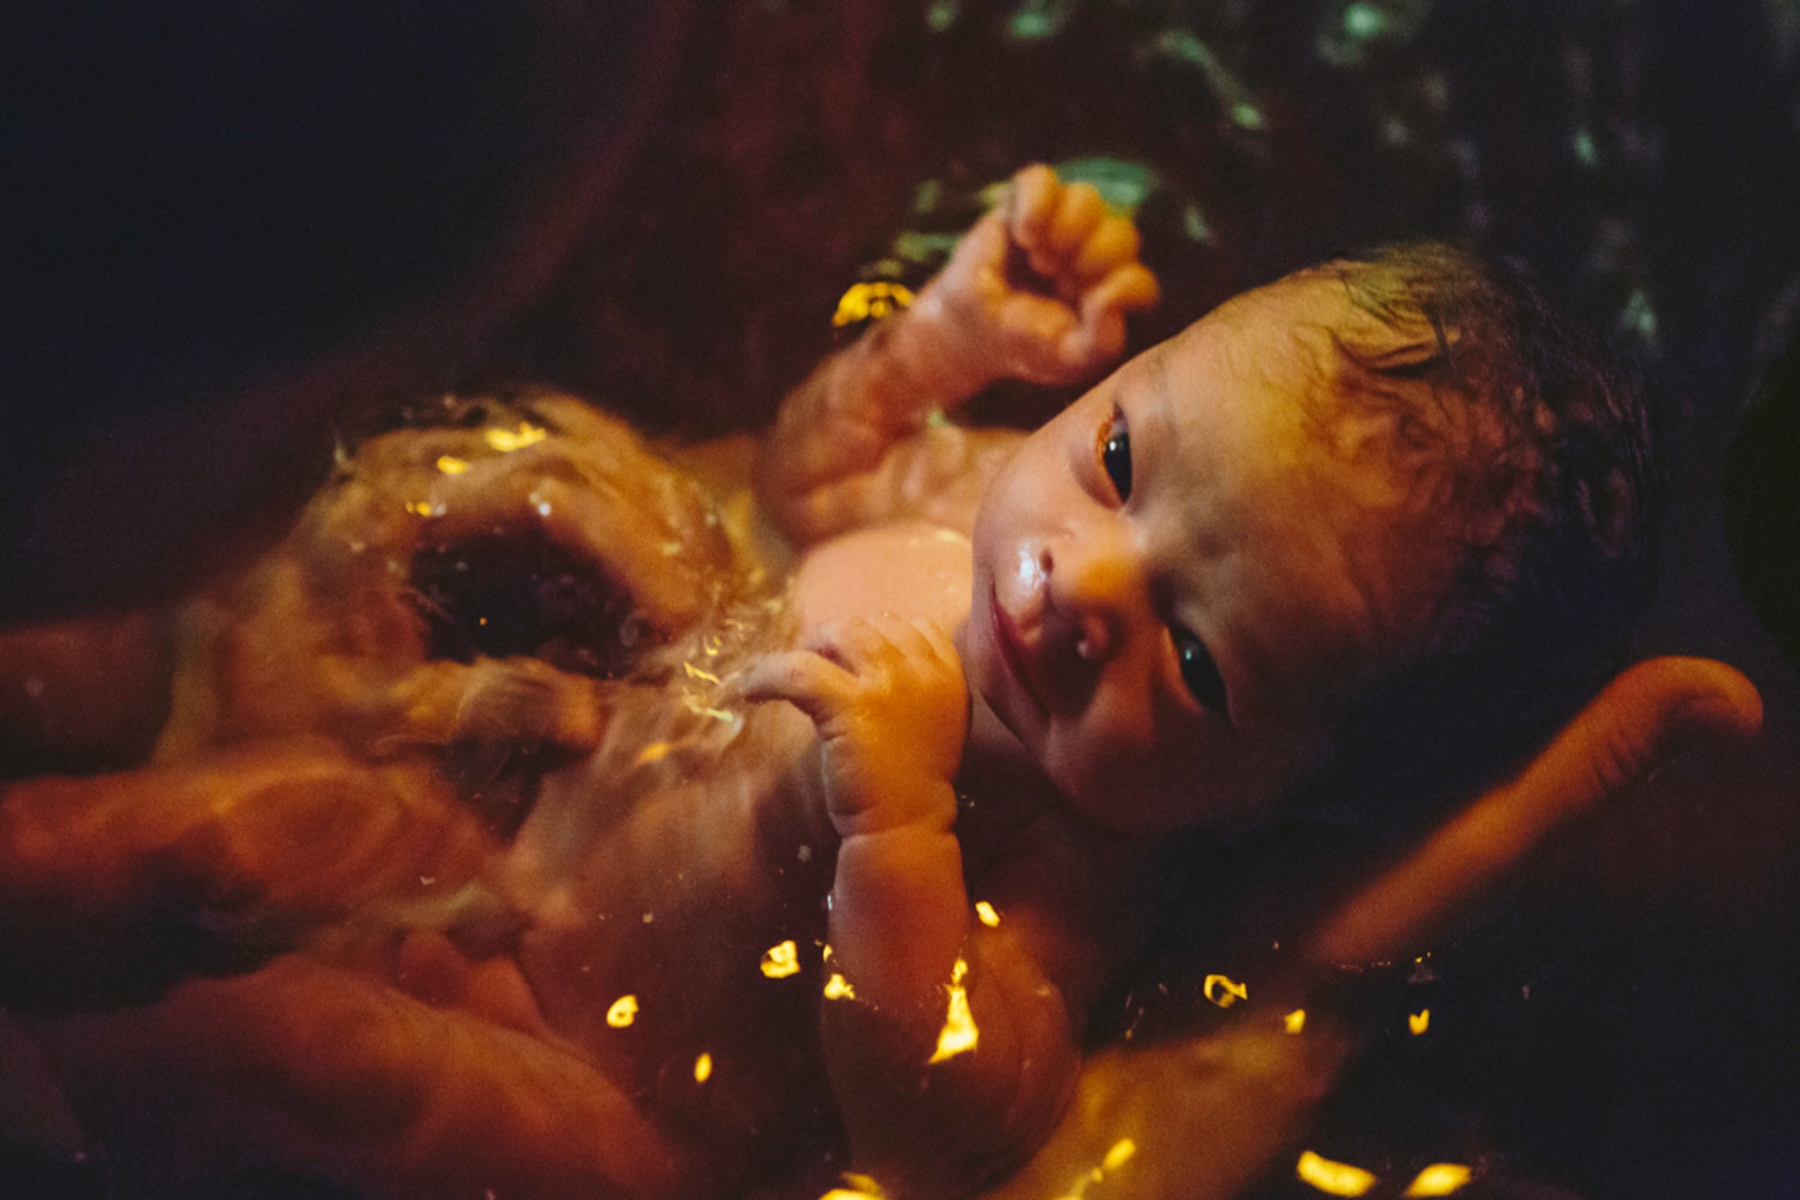 Γέννα νερό: Όλα όσα πρέπει να γνωρίζουμε για την διαδικασία της γέννας σε νερό